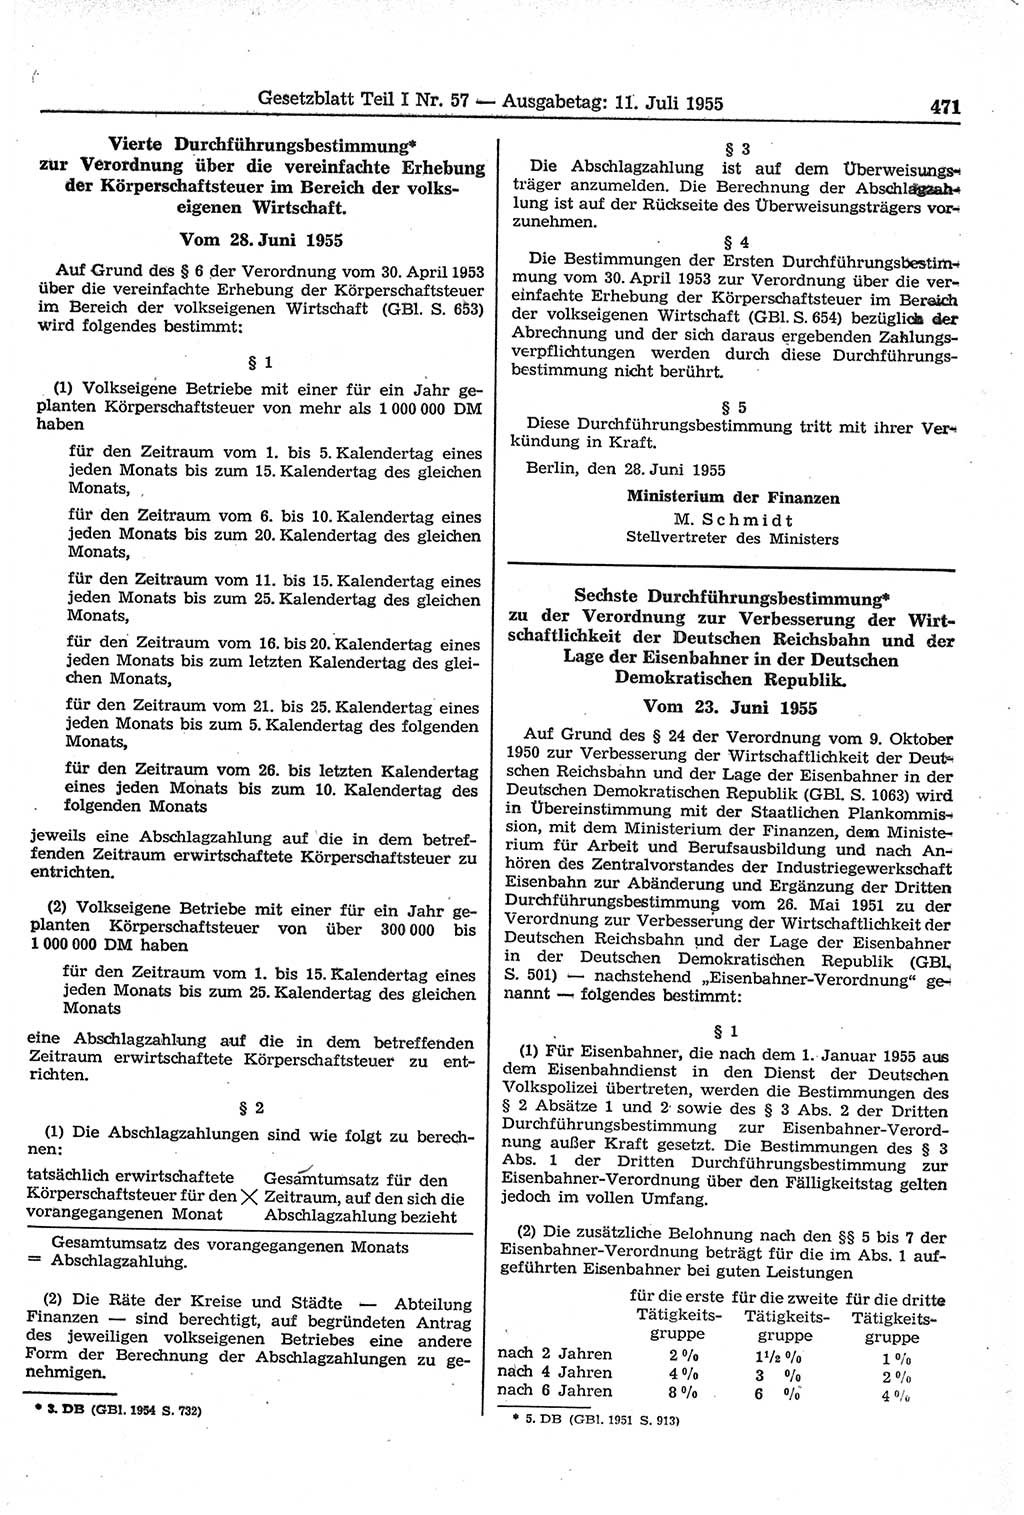 Gesetzblatt (GBl.) der Deutschen Demokratischen Republik (DDR) Teil Ⅰ 1955, Seite 471 (GBl. DDR Ⅰ 1955, S. 471)